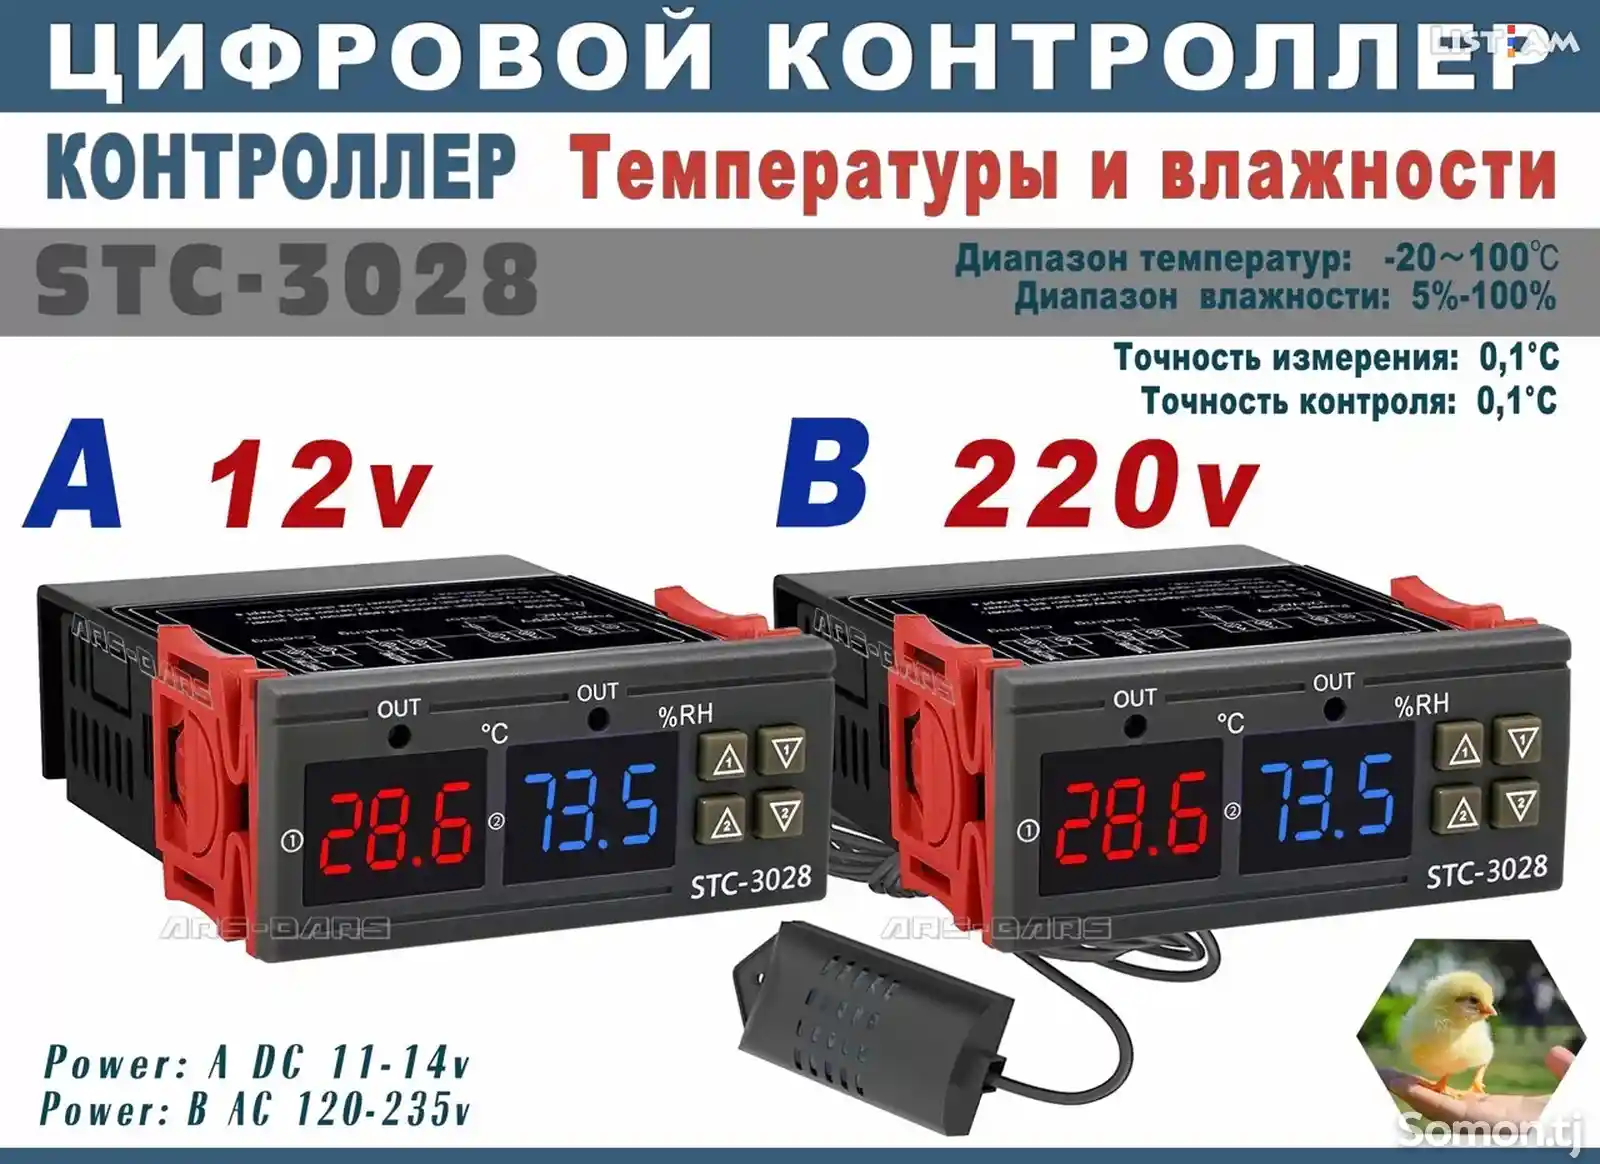 Цифровой контроллер Температуры и влажности-1